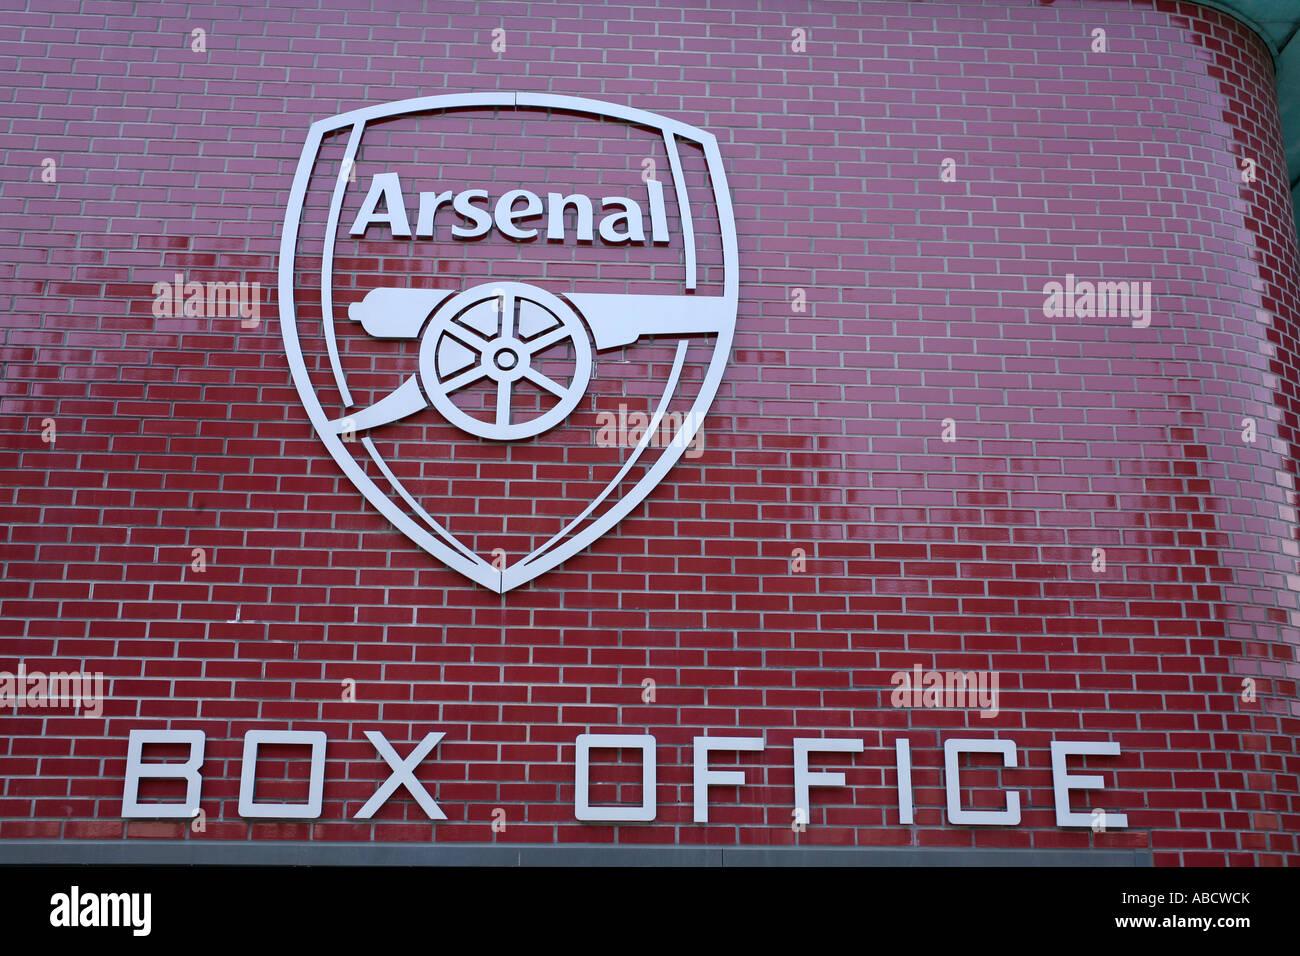 Arsenal Emirates Stadium, London, England Stock Photo